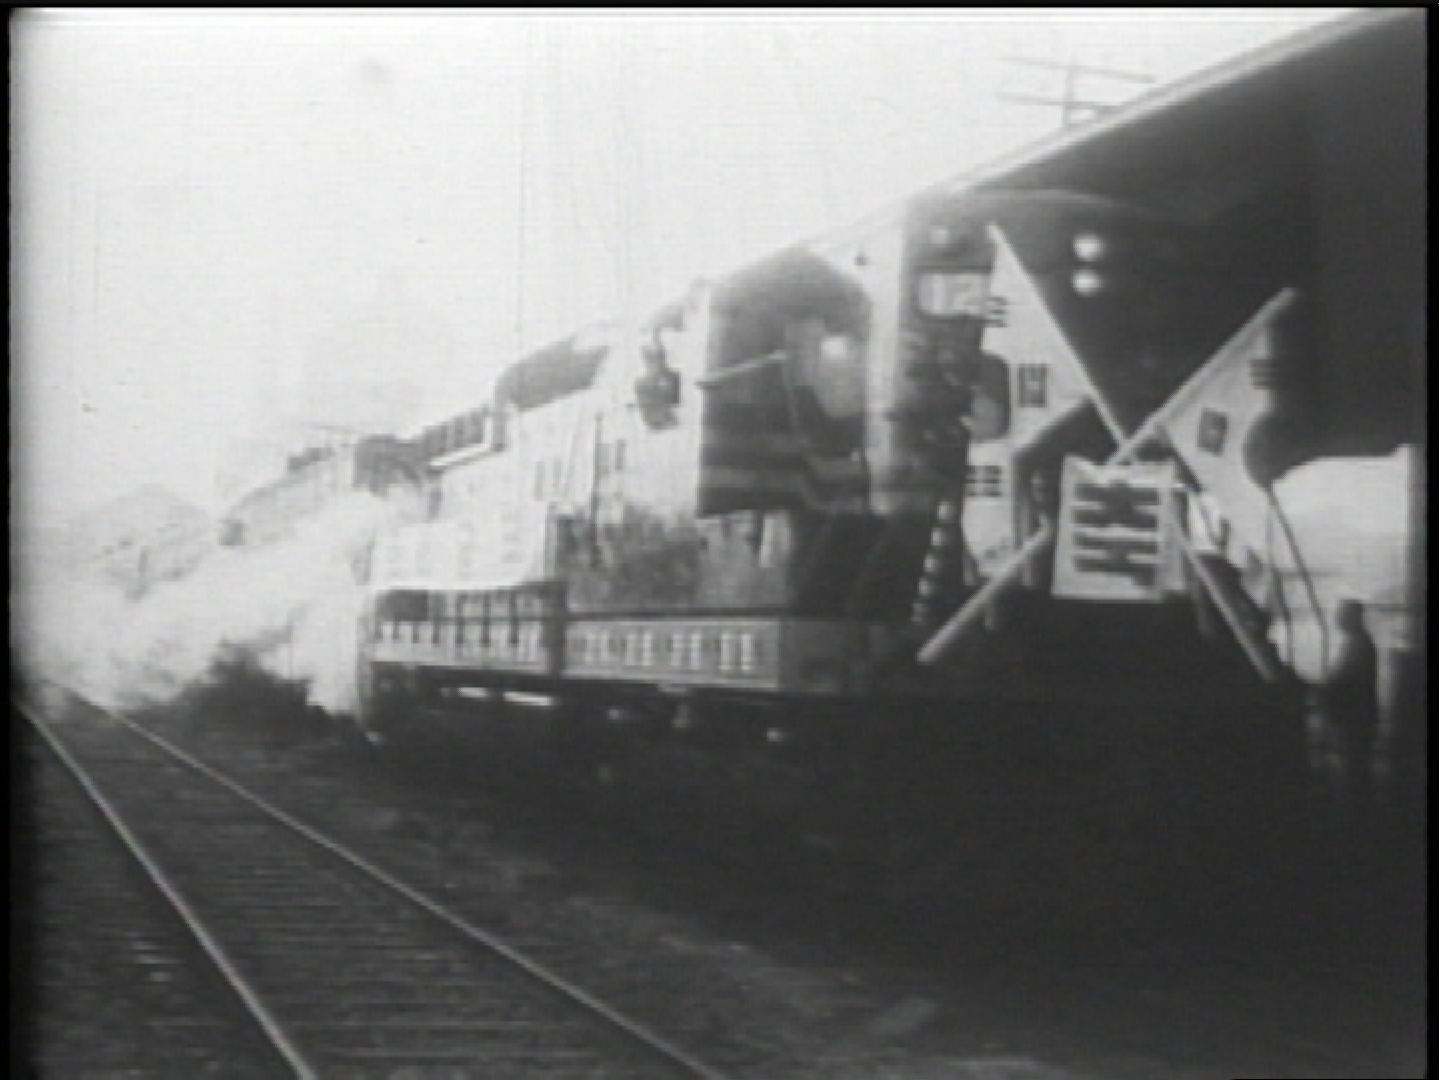 1960년 2월 21일 초특급 열차 발대식 당시 무궁화호라고 명명, 2년간 운행 후 ‘재건호’로 명칭 변경